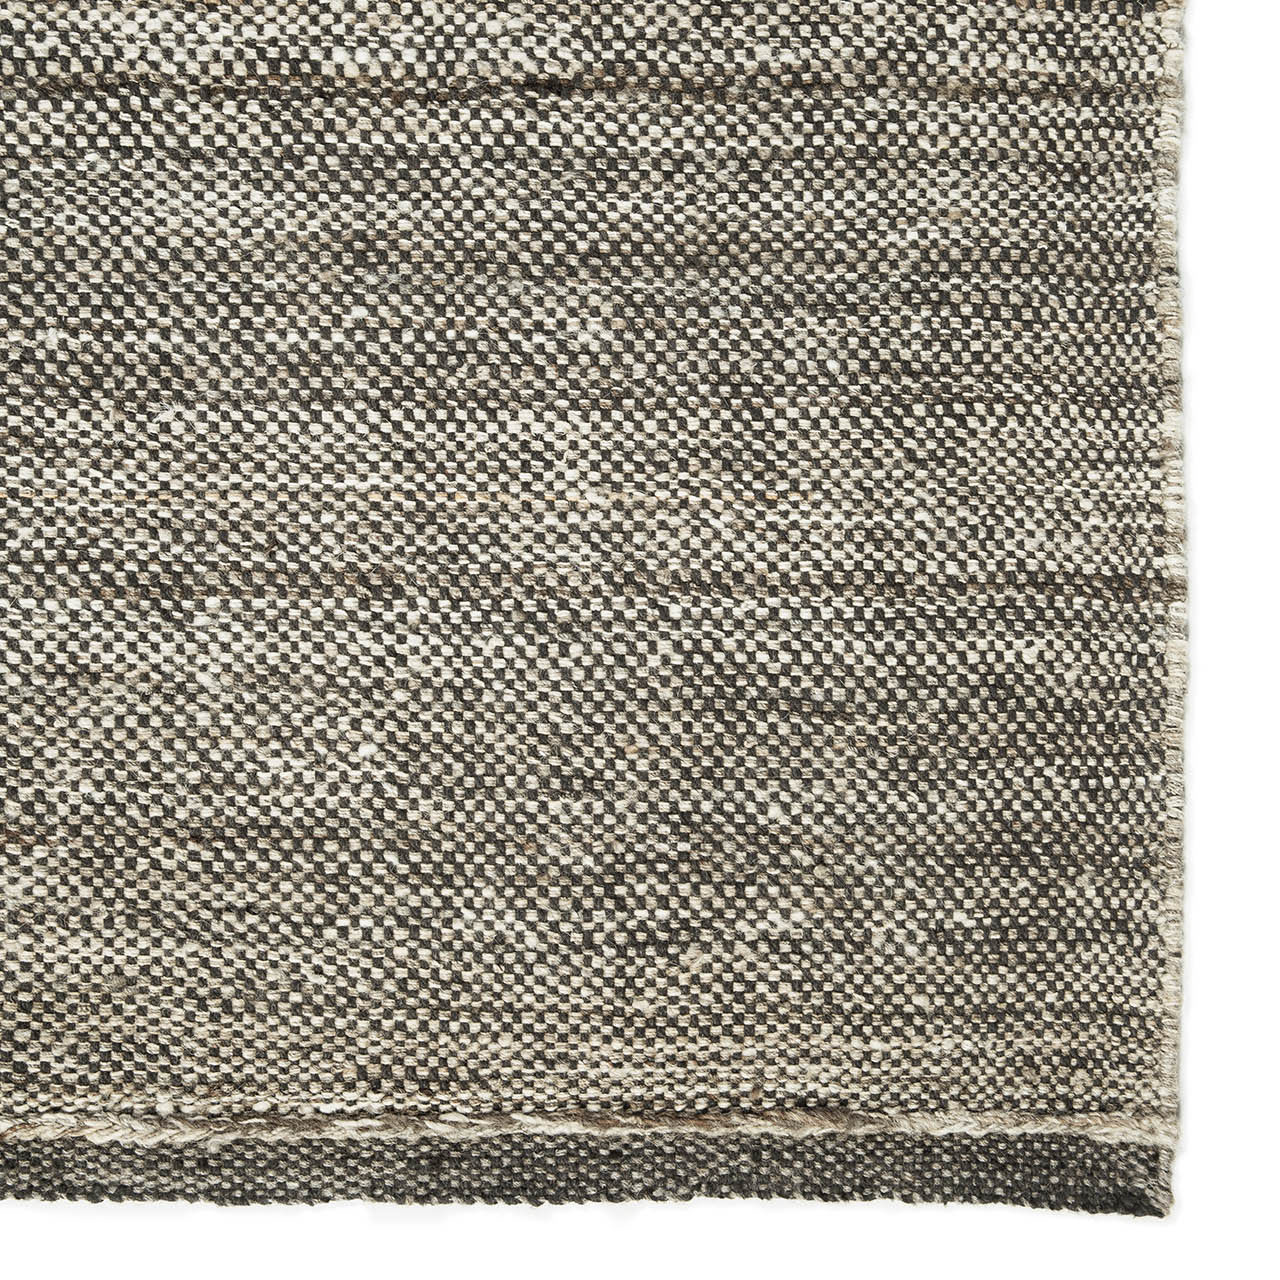 Checked Kilim-Teppich Natur 100 % handgesponnene Wolle 21729